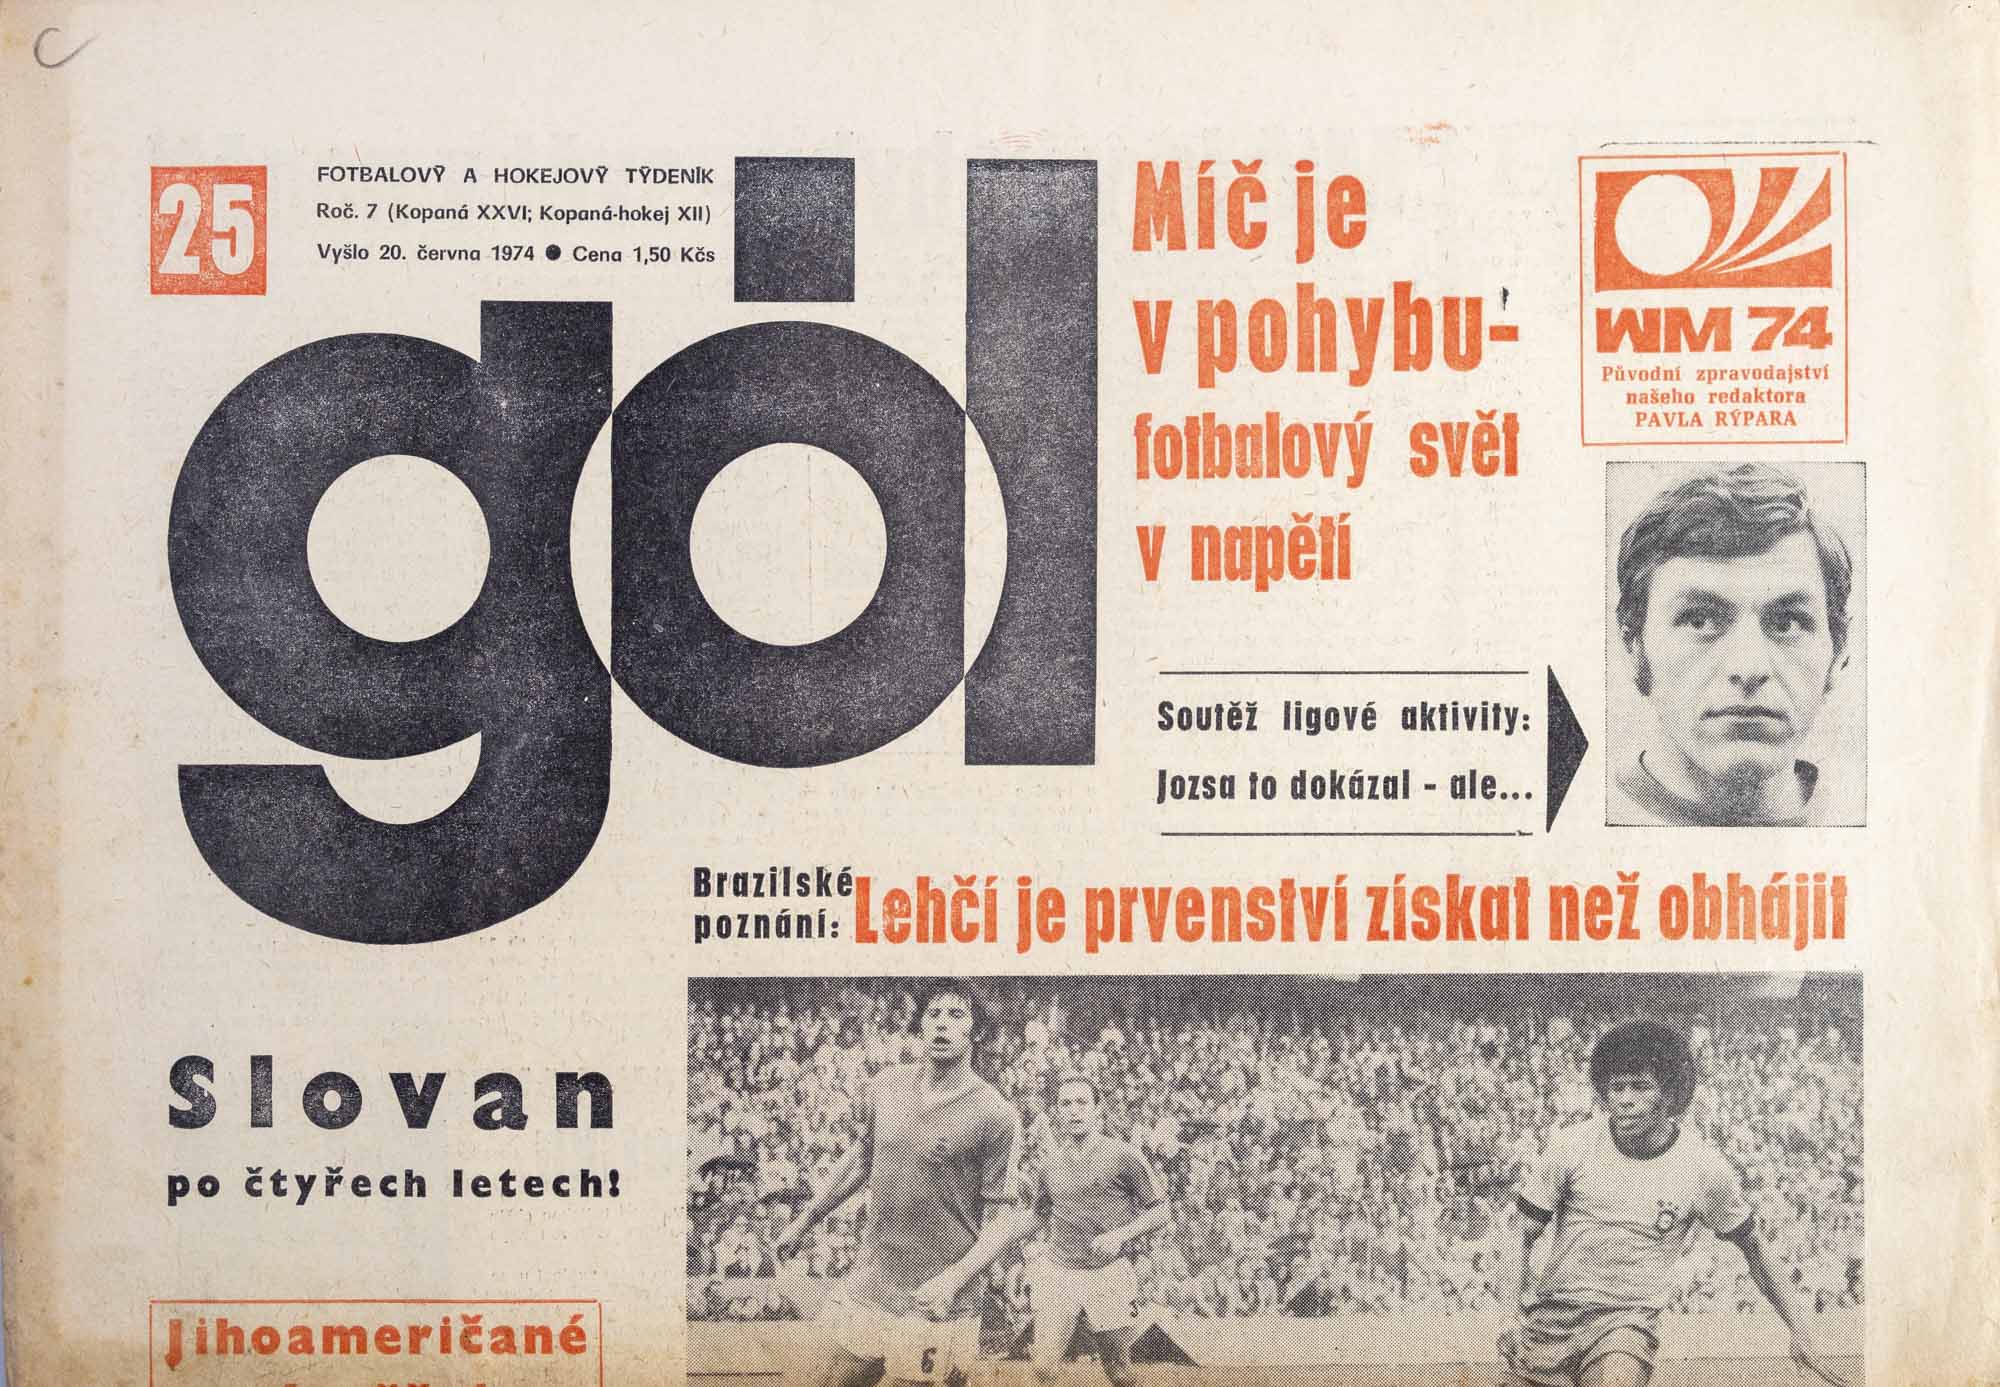 GÓL. Fotbalový a hokejový týdeník, 7/26/12/1974 č. 25